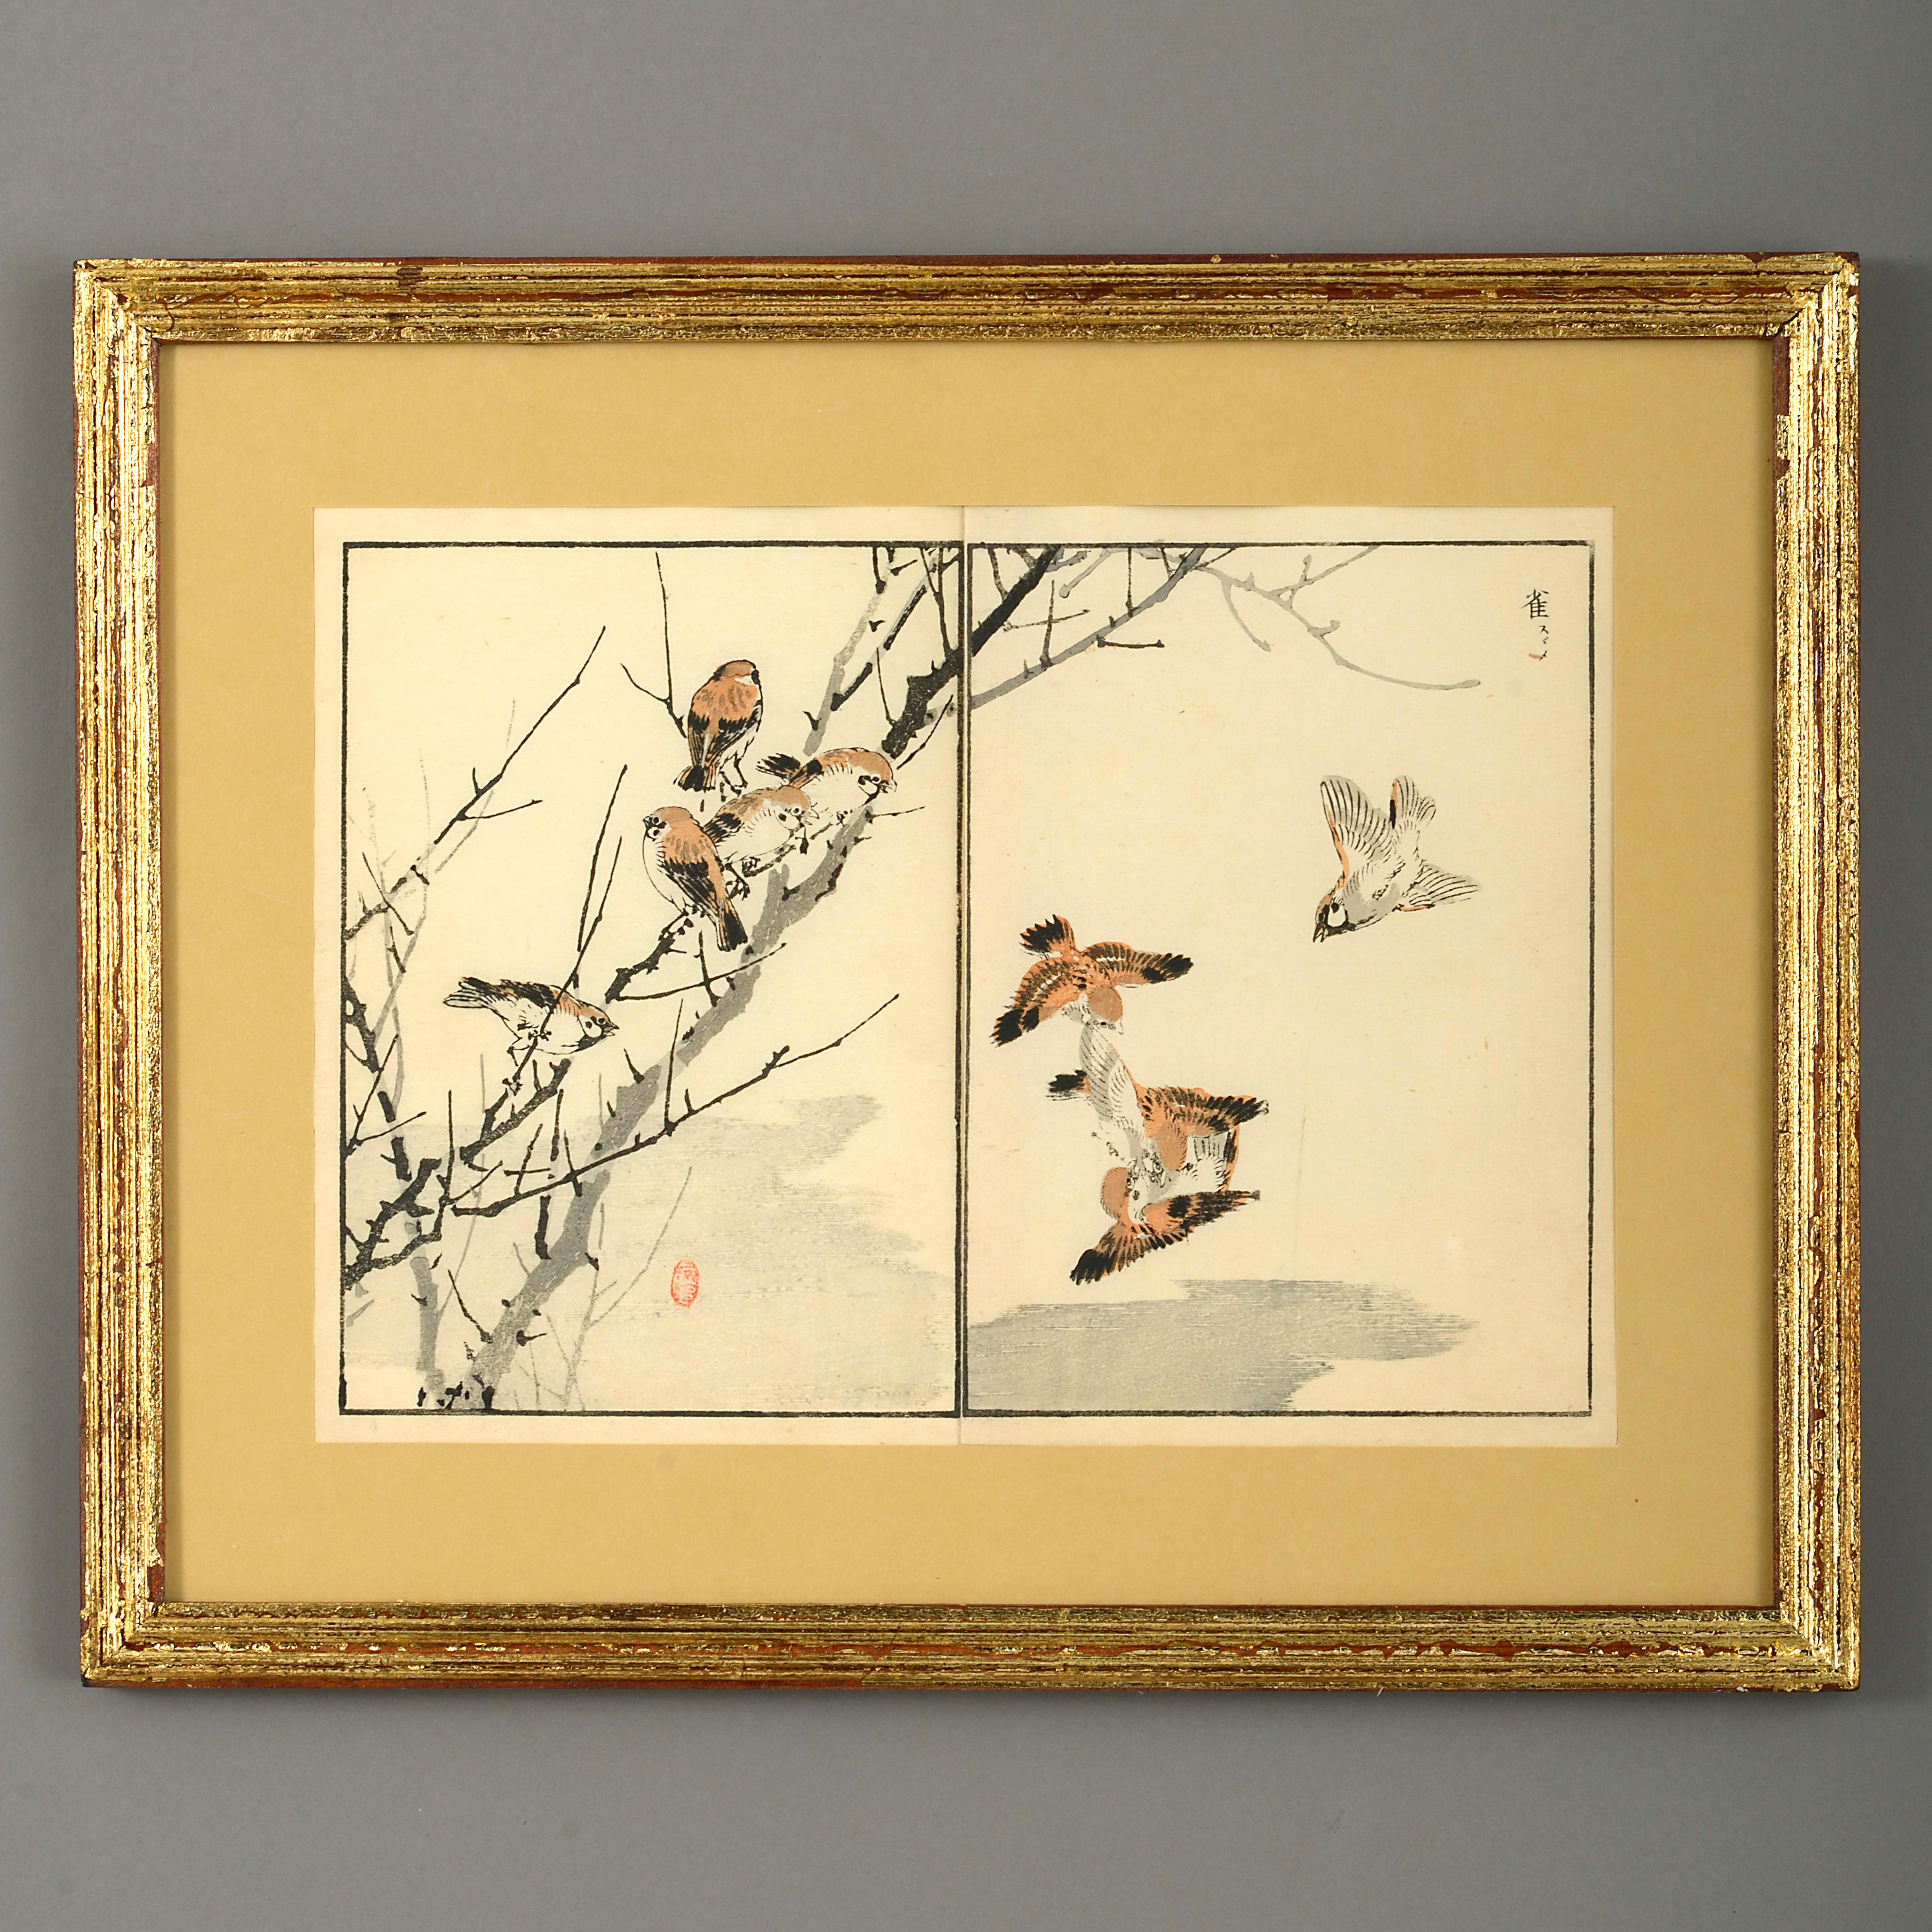 Neuf estampes sur bois de la fin du XIXe siècle de la période Meiji 6